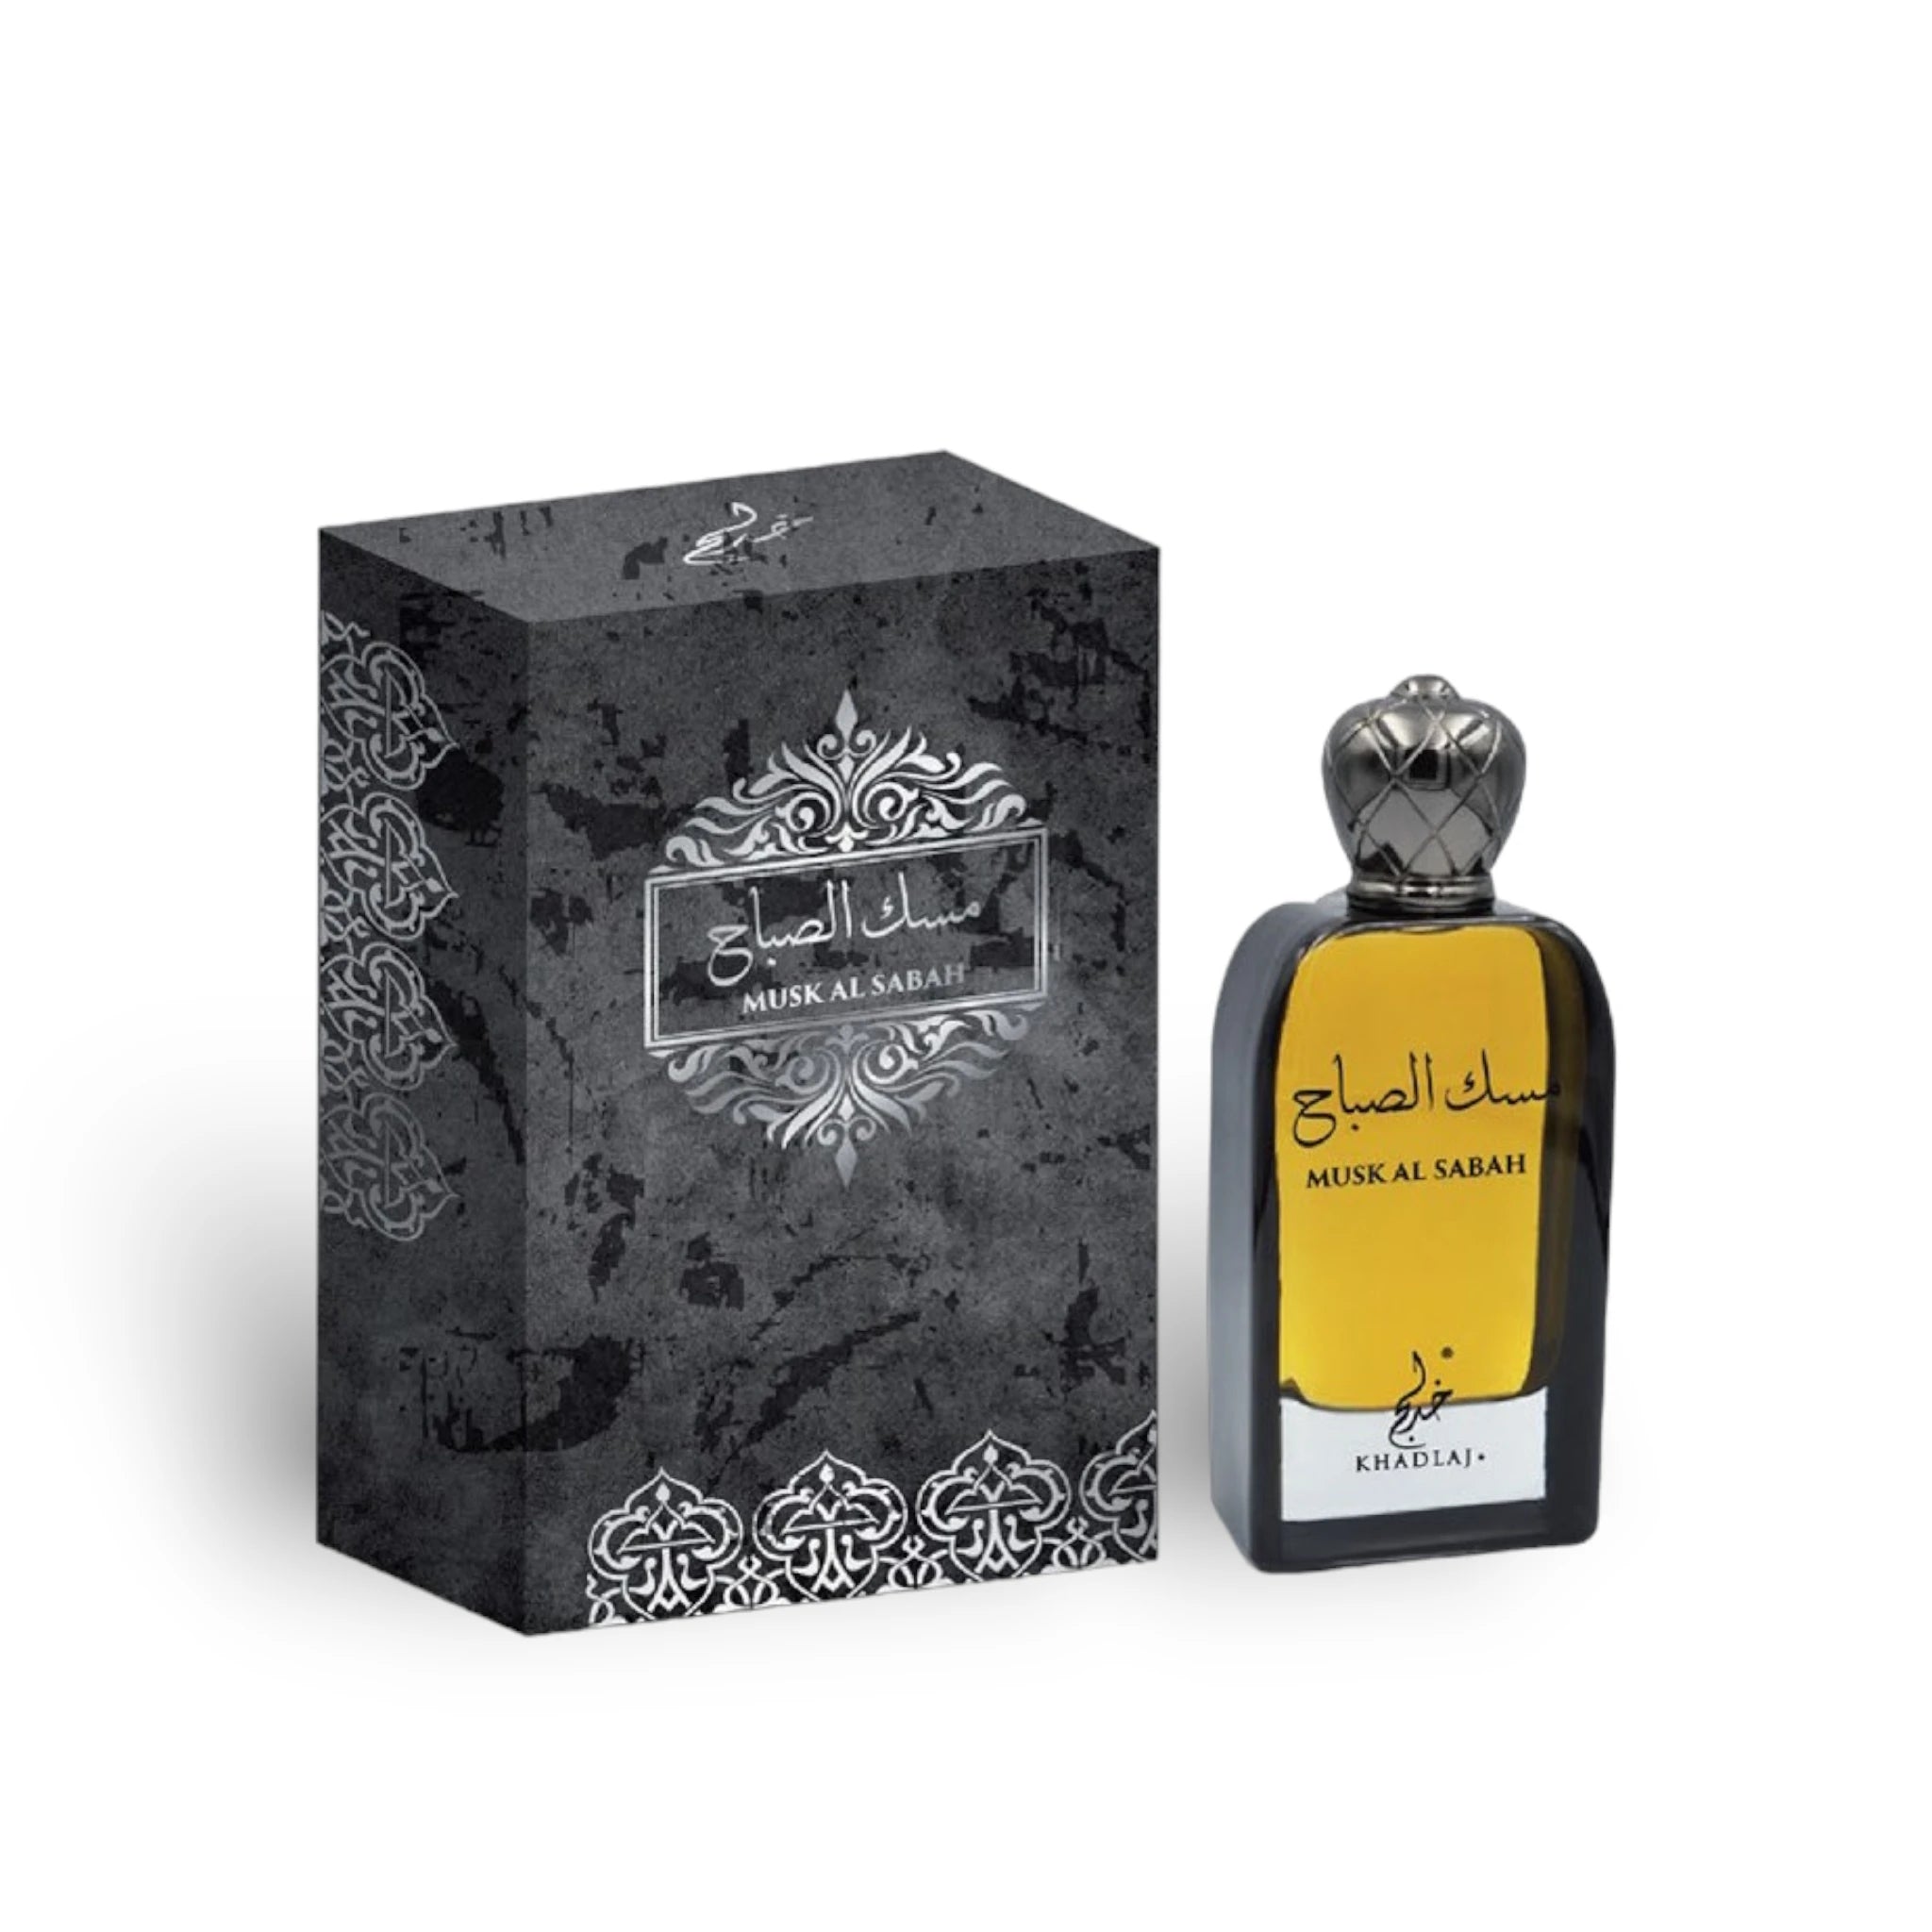 Musk-Al-Sabah-Perfume-Eau-de-Parfum-100ml-by-Khadlaj.webp